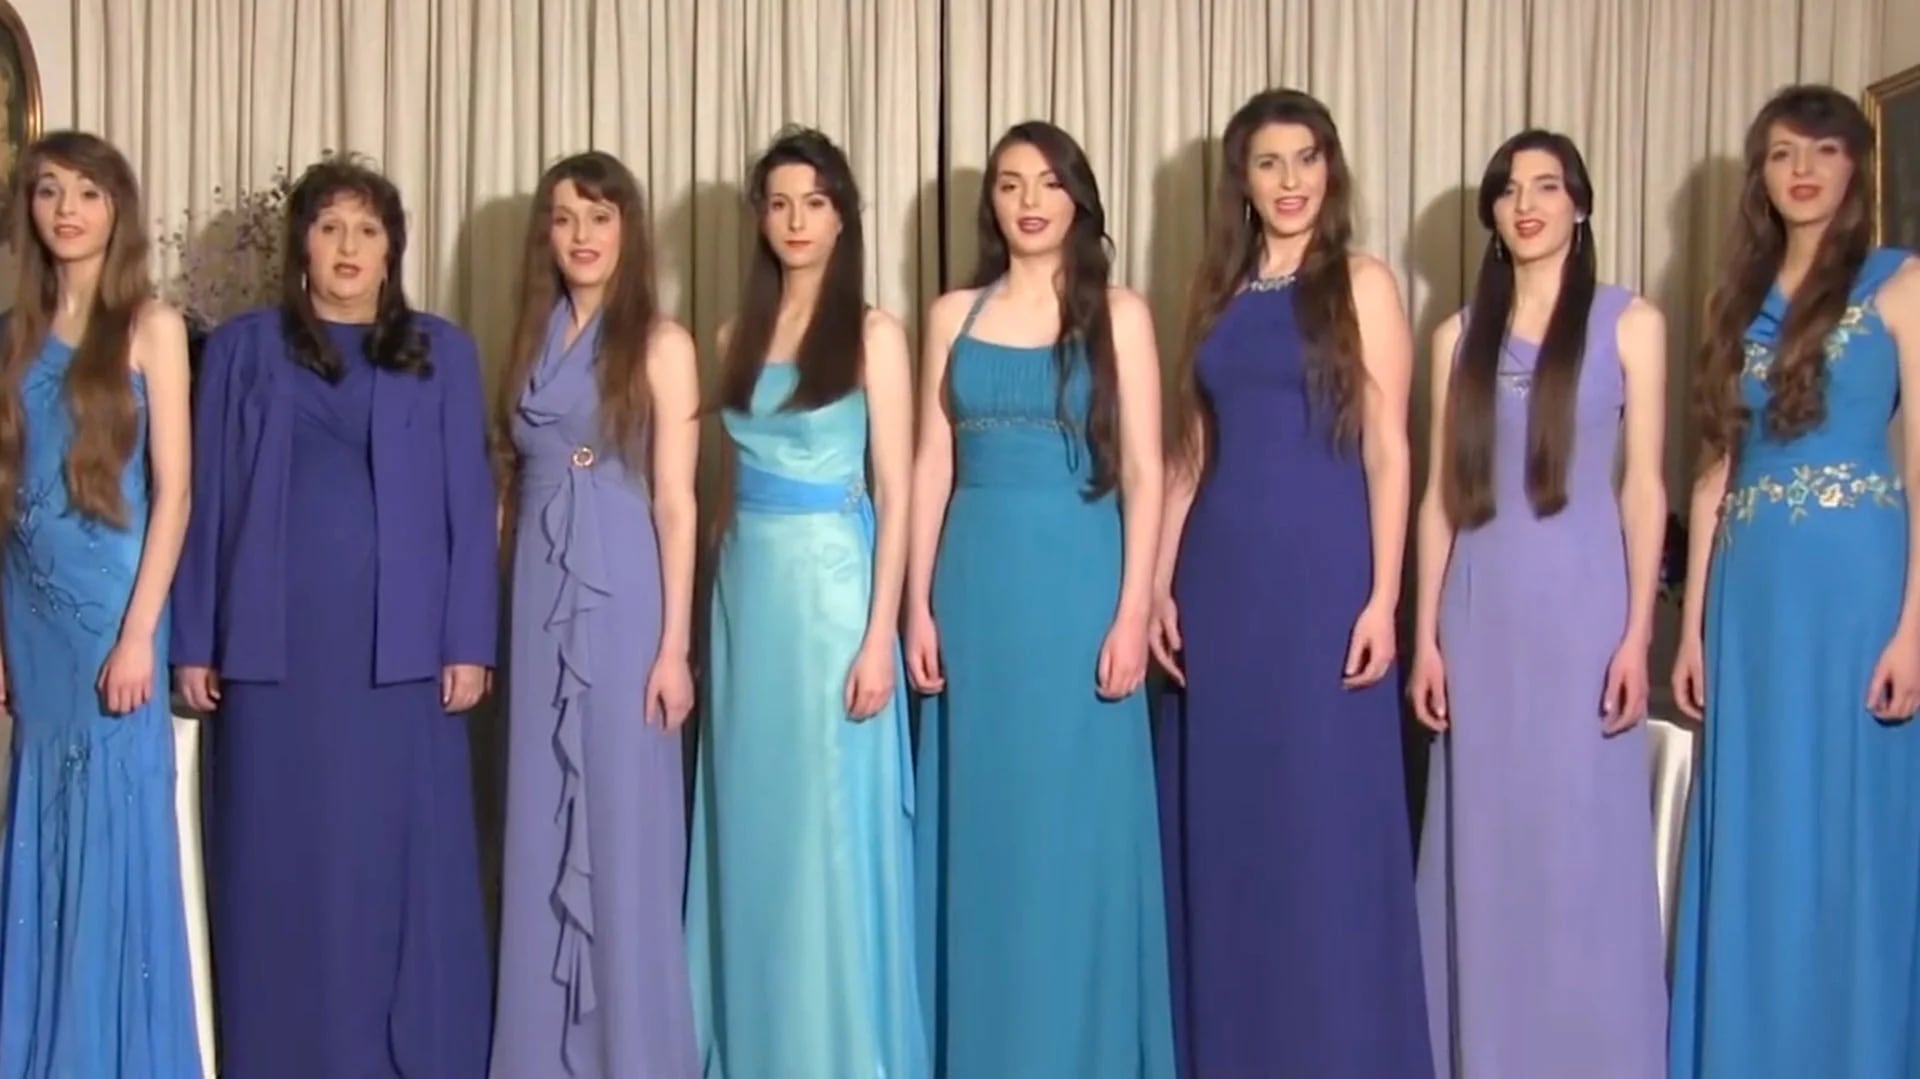 Quién es Flos Mariae, el grupo católico formado por 7 hermanas que ha inspirado la nueva serie de Los Javis